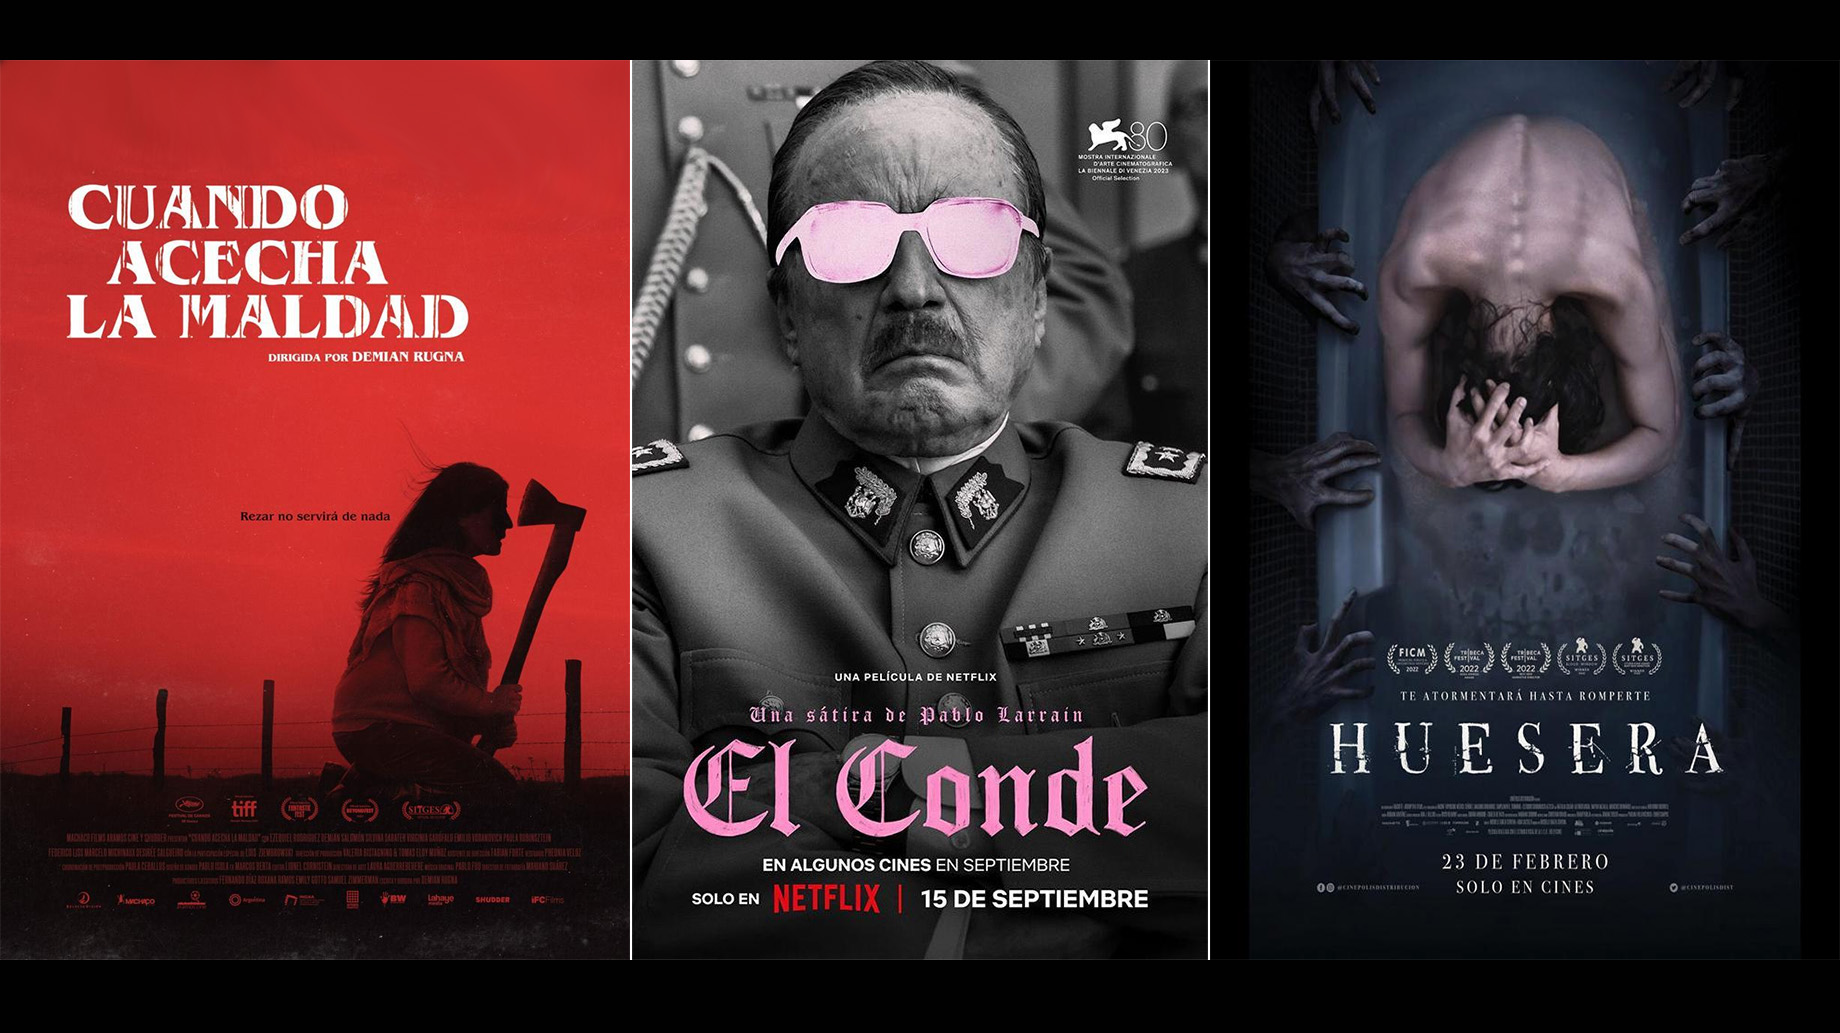 Las tres grandes películas latinoamericanas de terror, este año